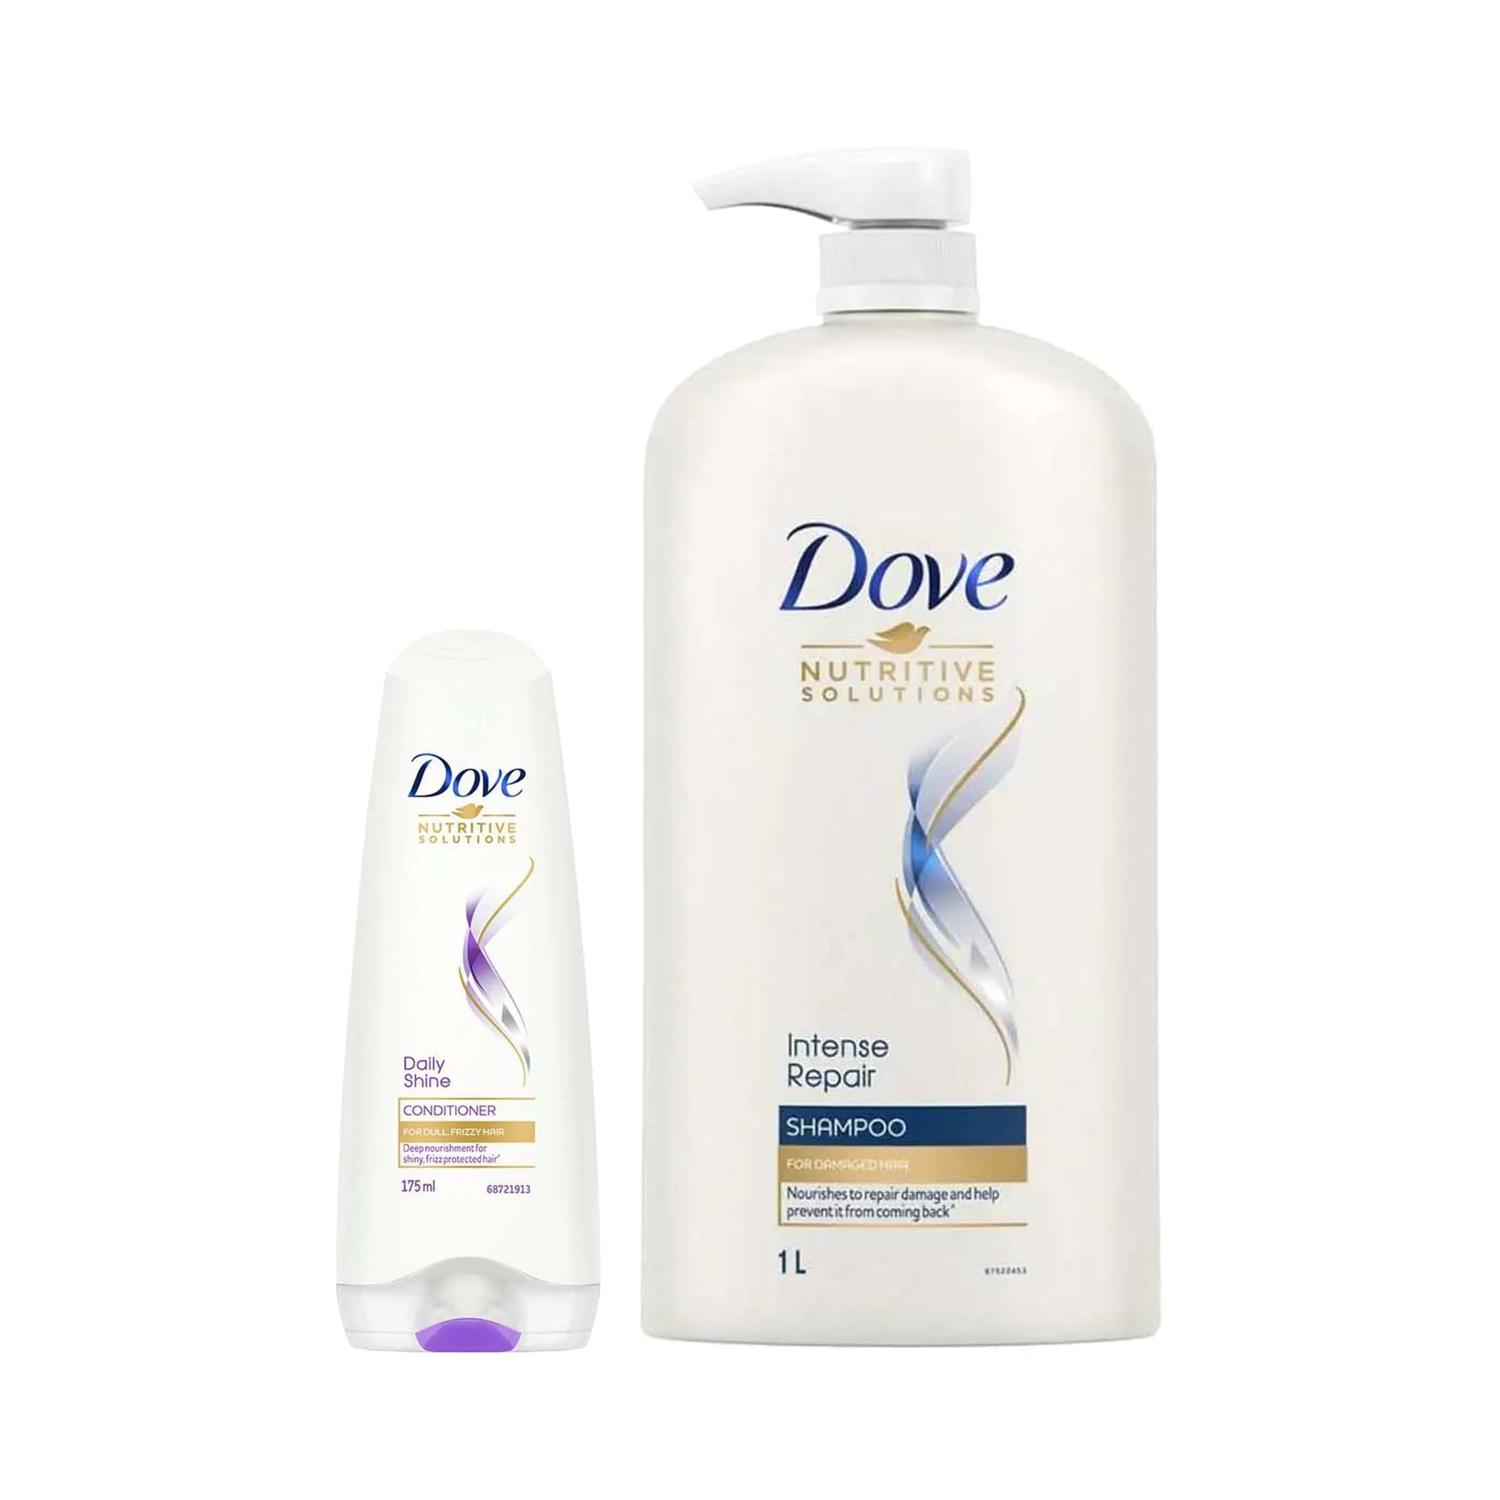 Dove | Dove Intense Repair Shampoo (1000 ml) + Daily Shine Conditioner (175 ml) Combo